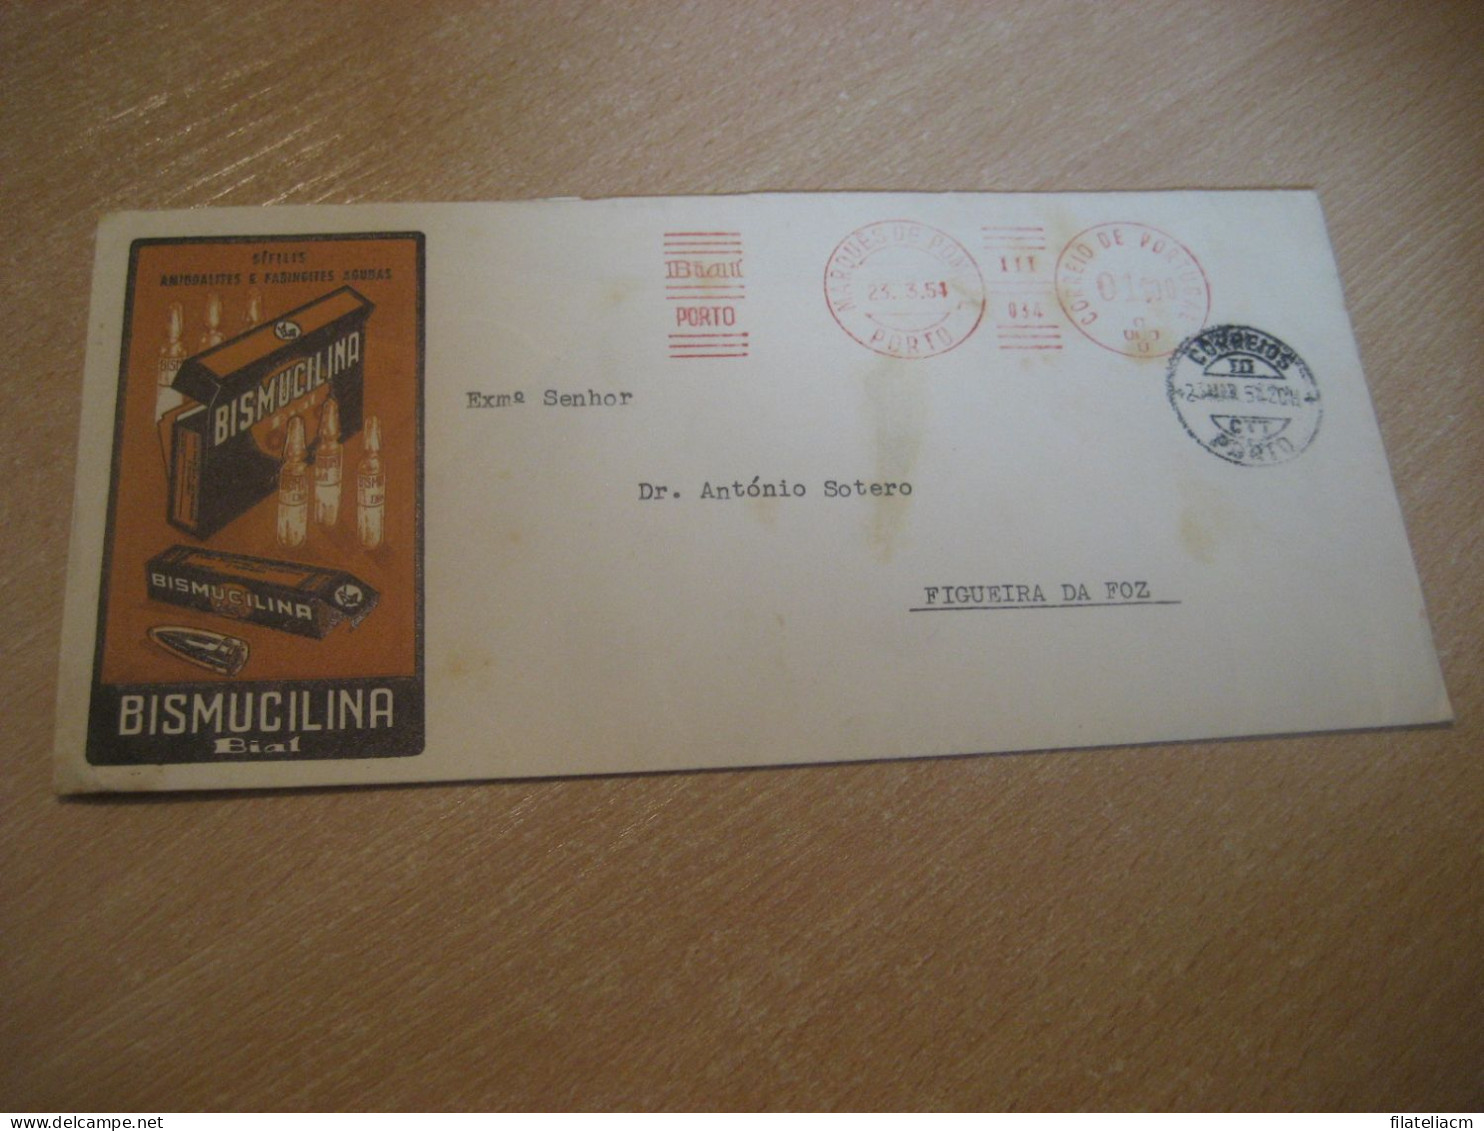 PORTO 1954 To Figueira Da Foz Bial Bismucilina Pharmacy Health Chemical Meter Mail Cancel Cover PORTUGAL - Cartas & Documentos